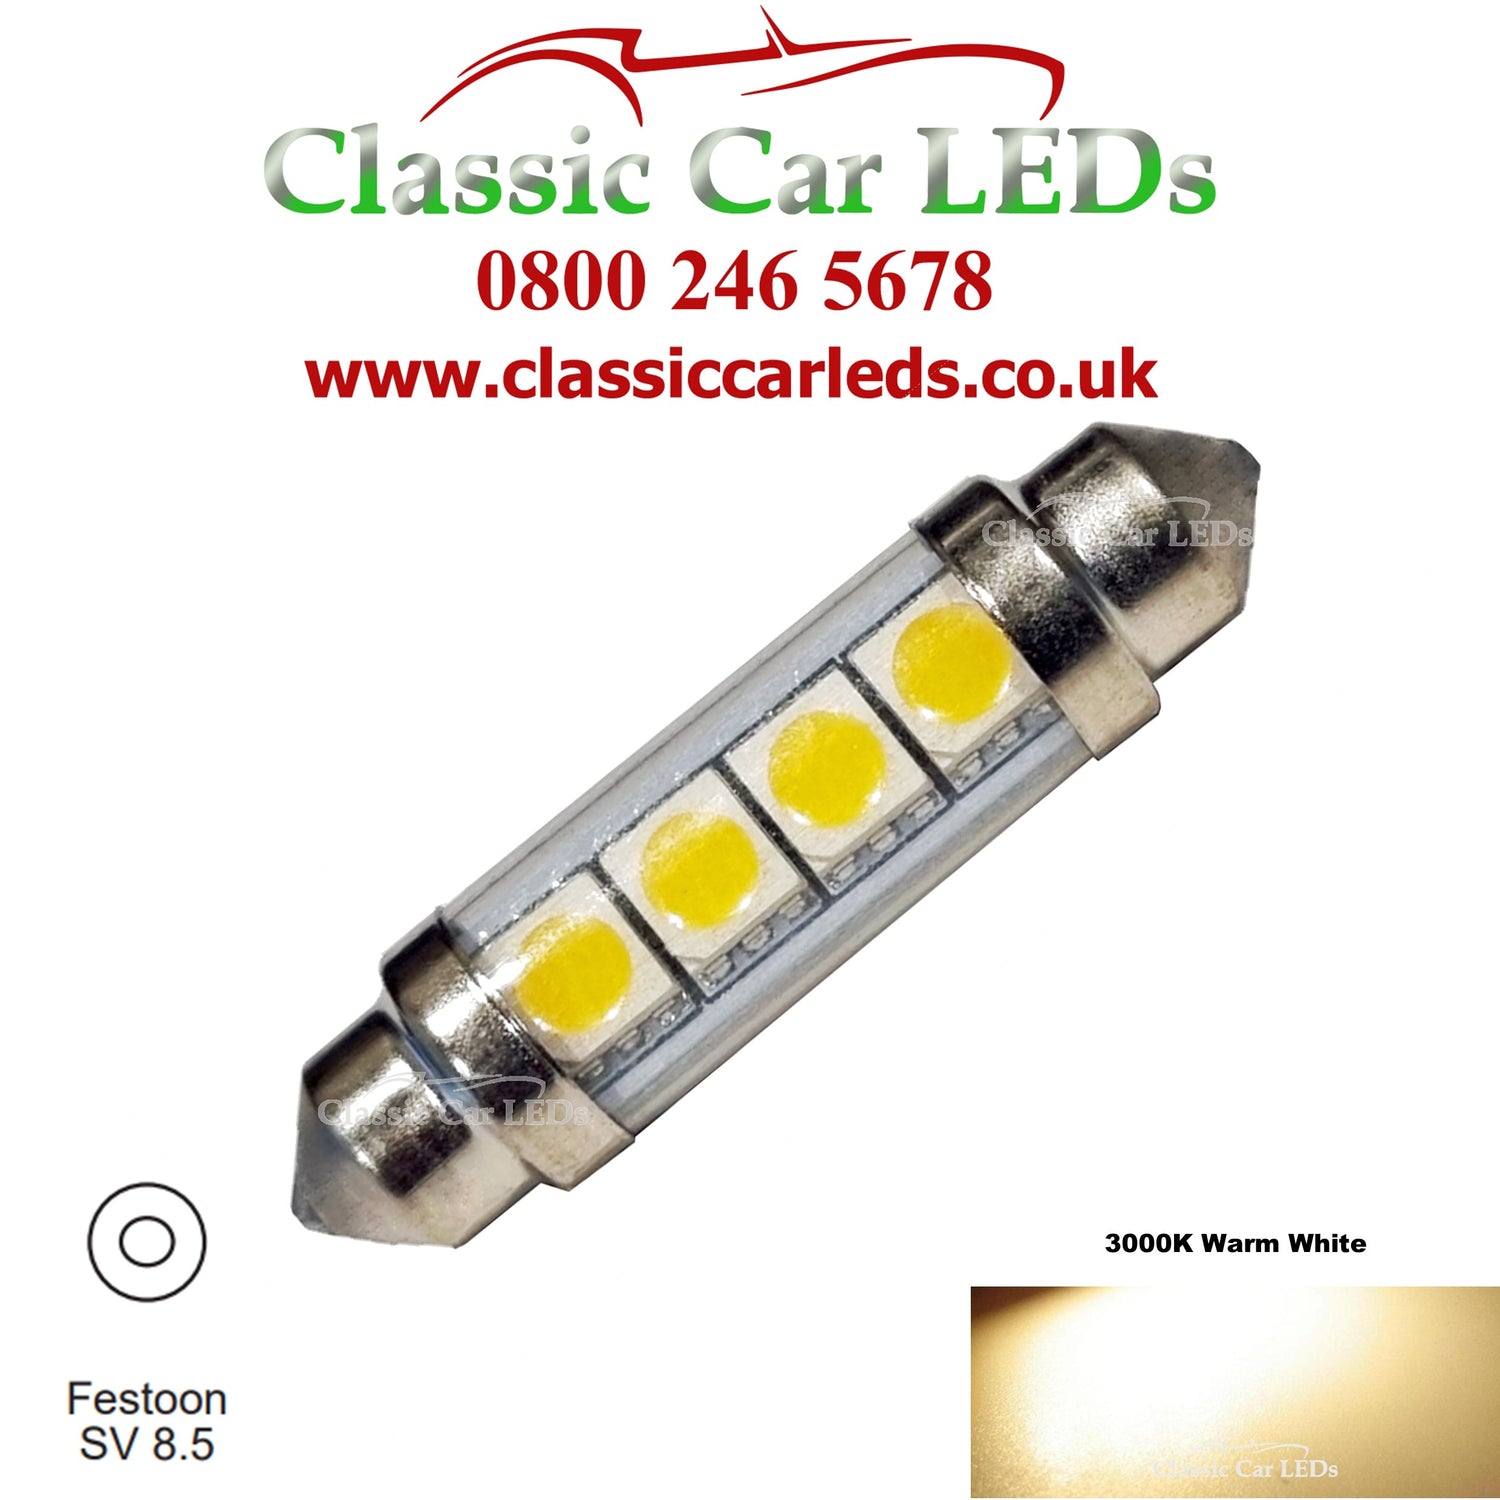 Classic Car LEDs Ltd